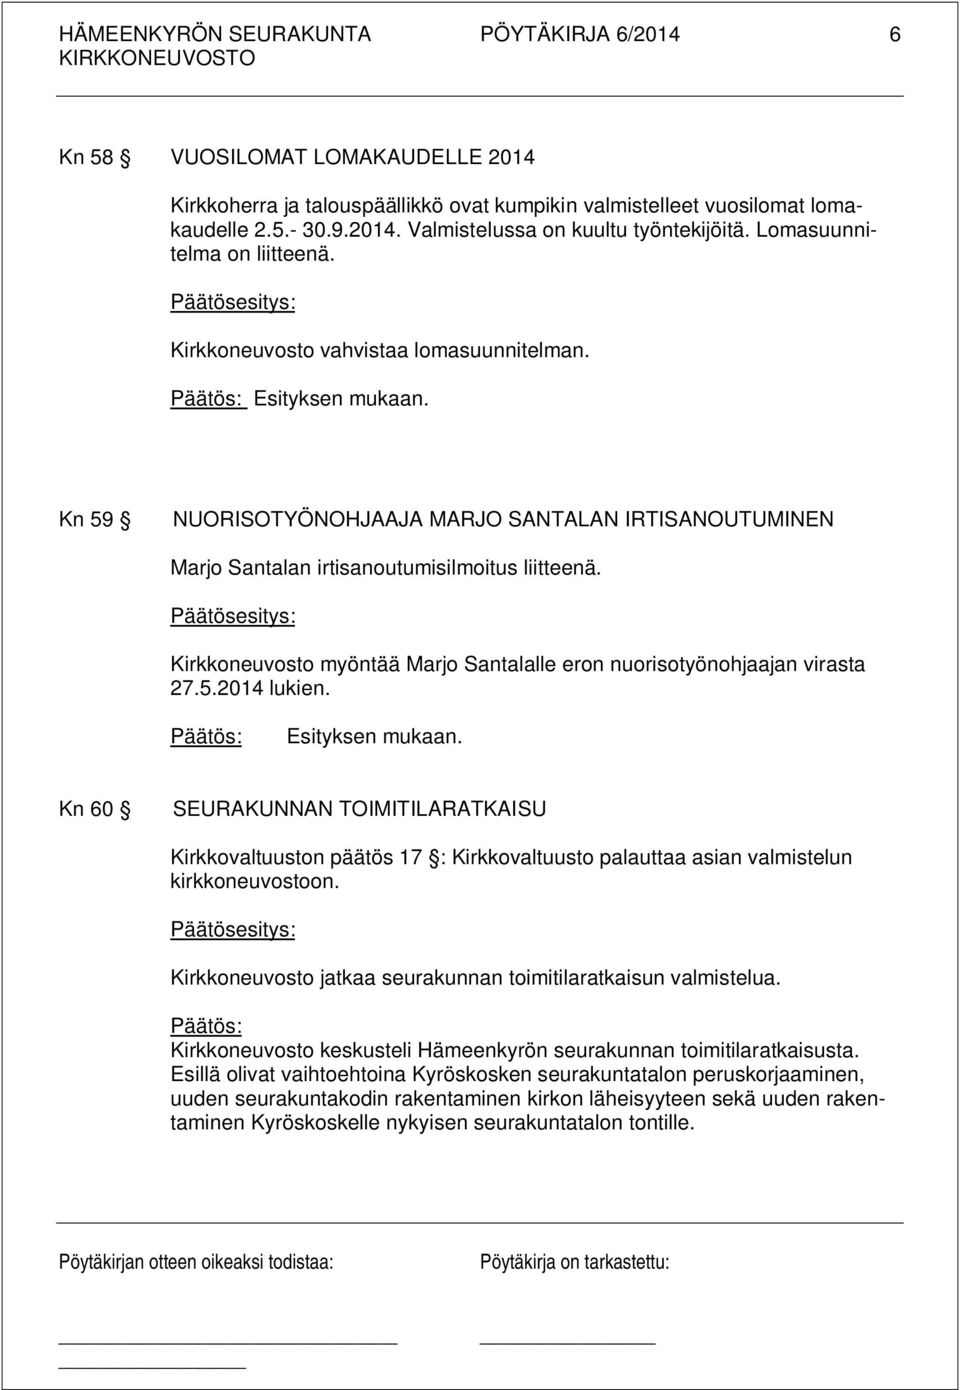 Kirkkoneuvosto myöntää Marjo Santalalle eron nuorisotyönohjaajan virasta 27.5.2014 lukien.